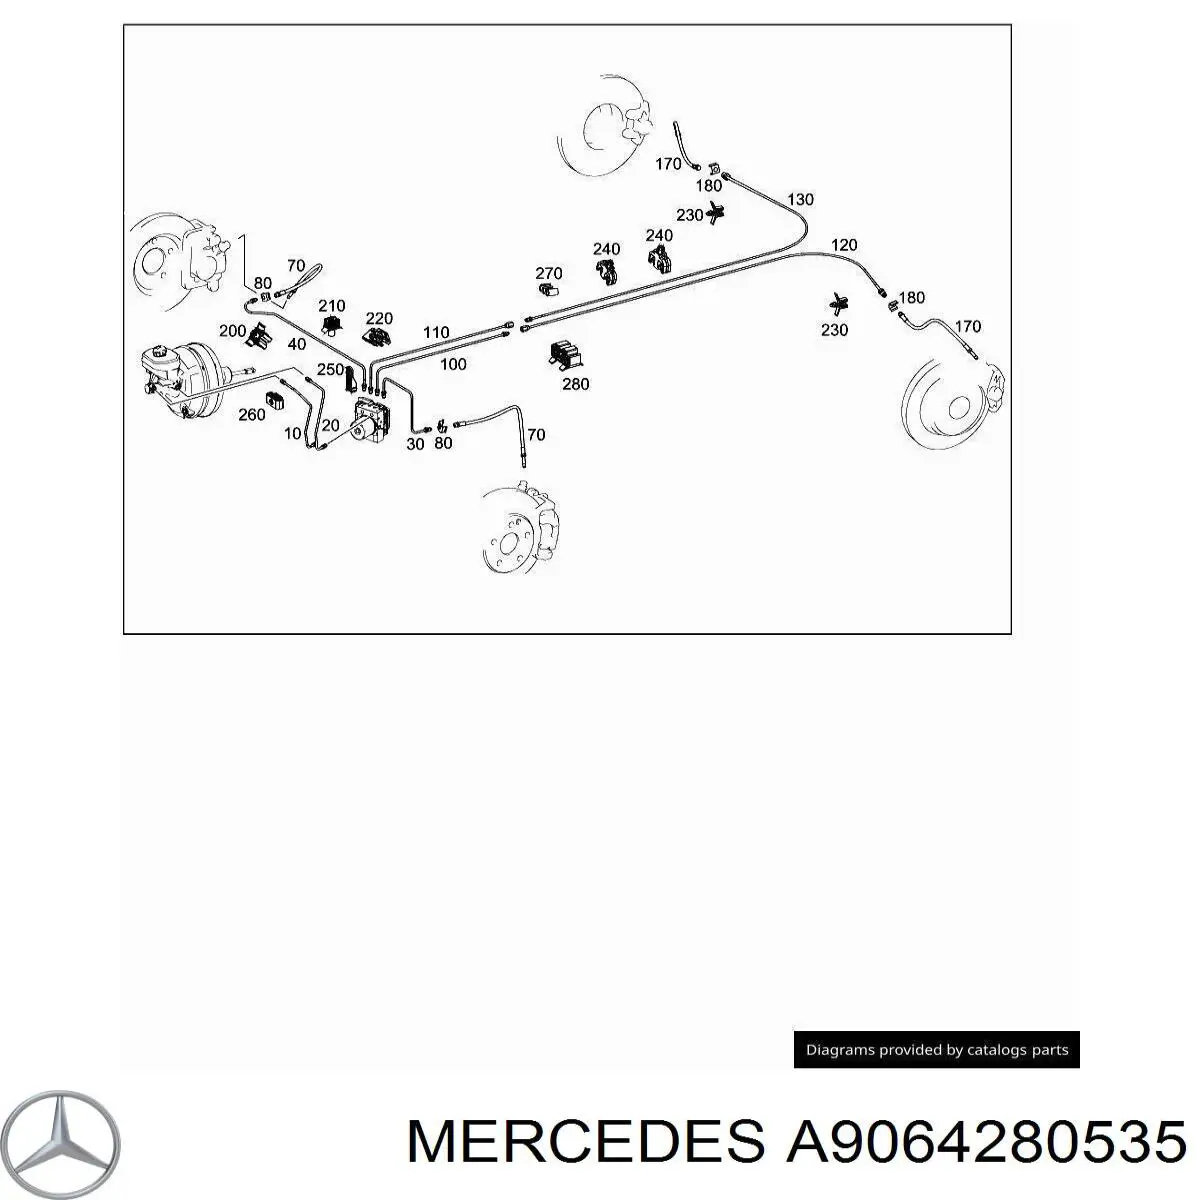 A9064280535 Mercedes latiguillo de freno delantero